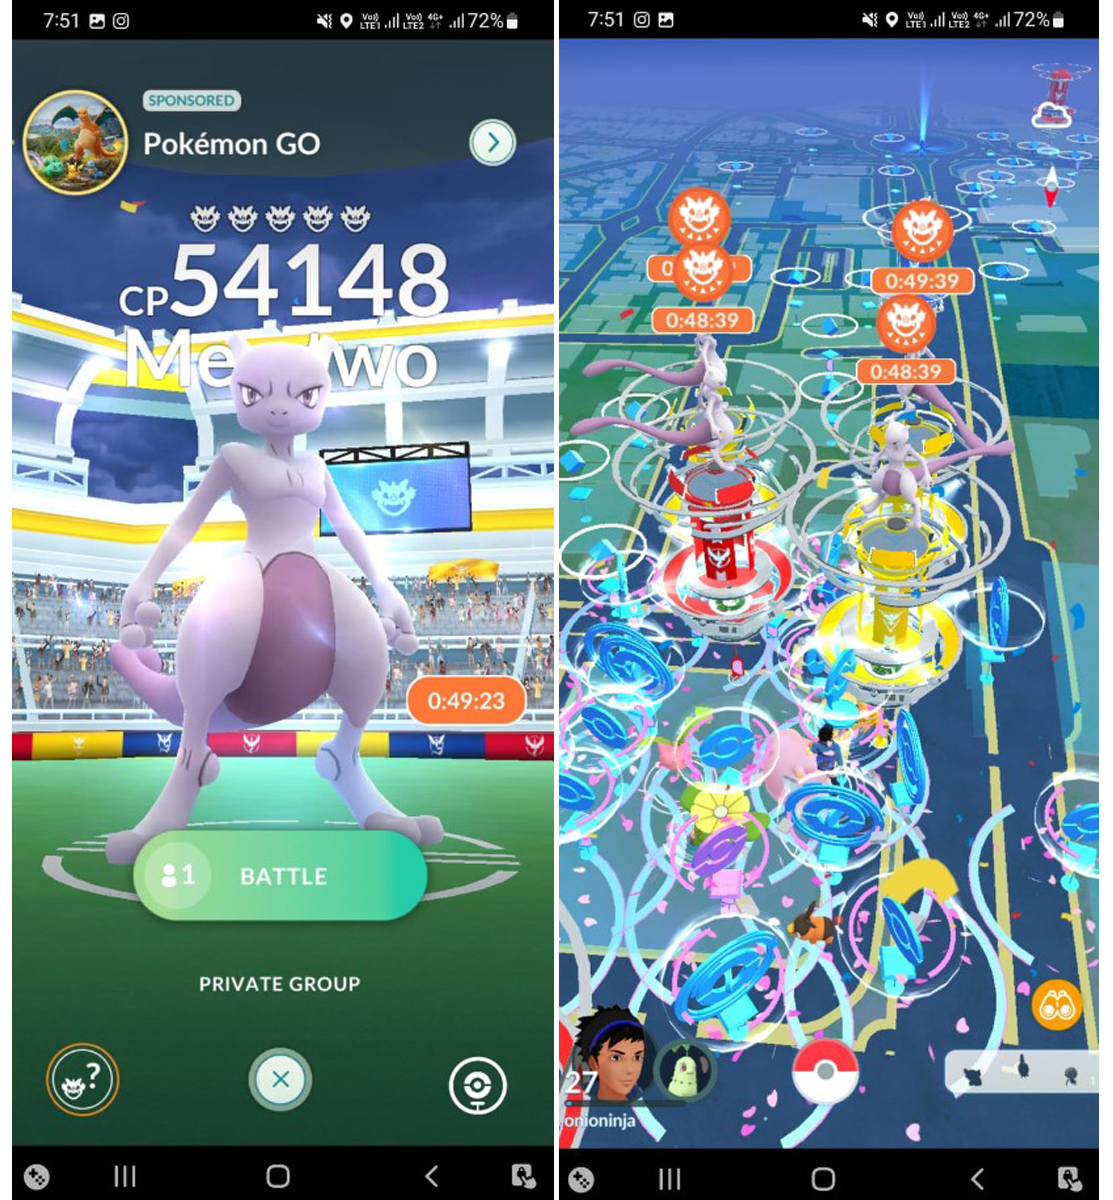 PokéPoa - Pokémon Go em Porto Alegre - Mewtwo volta pras raids